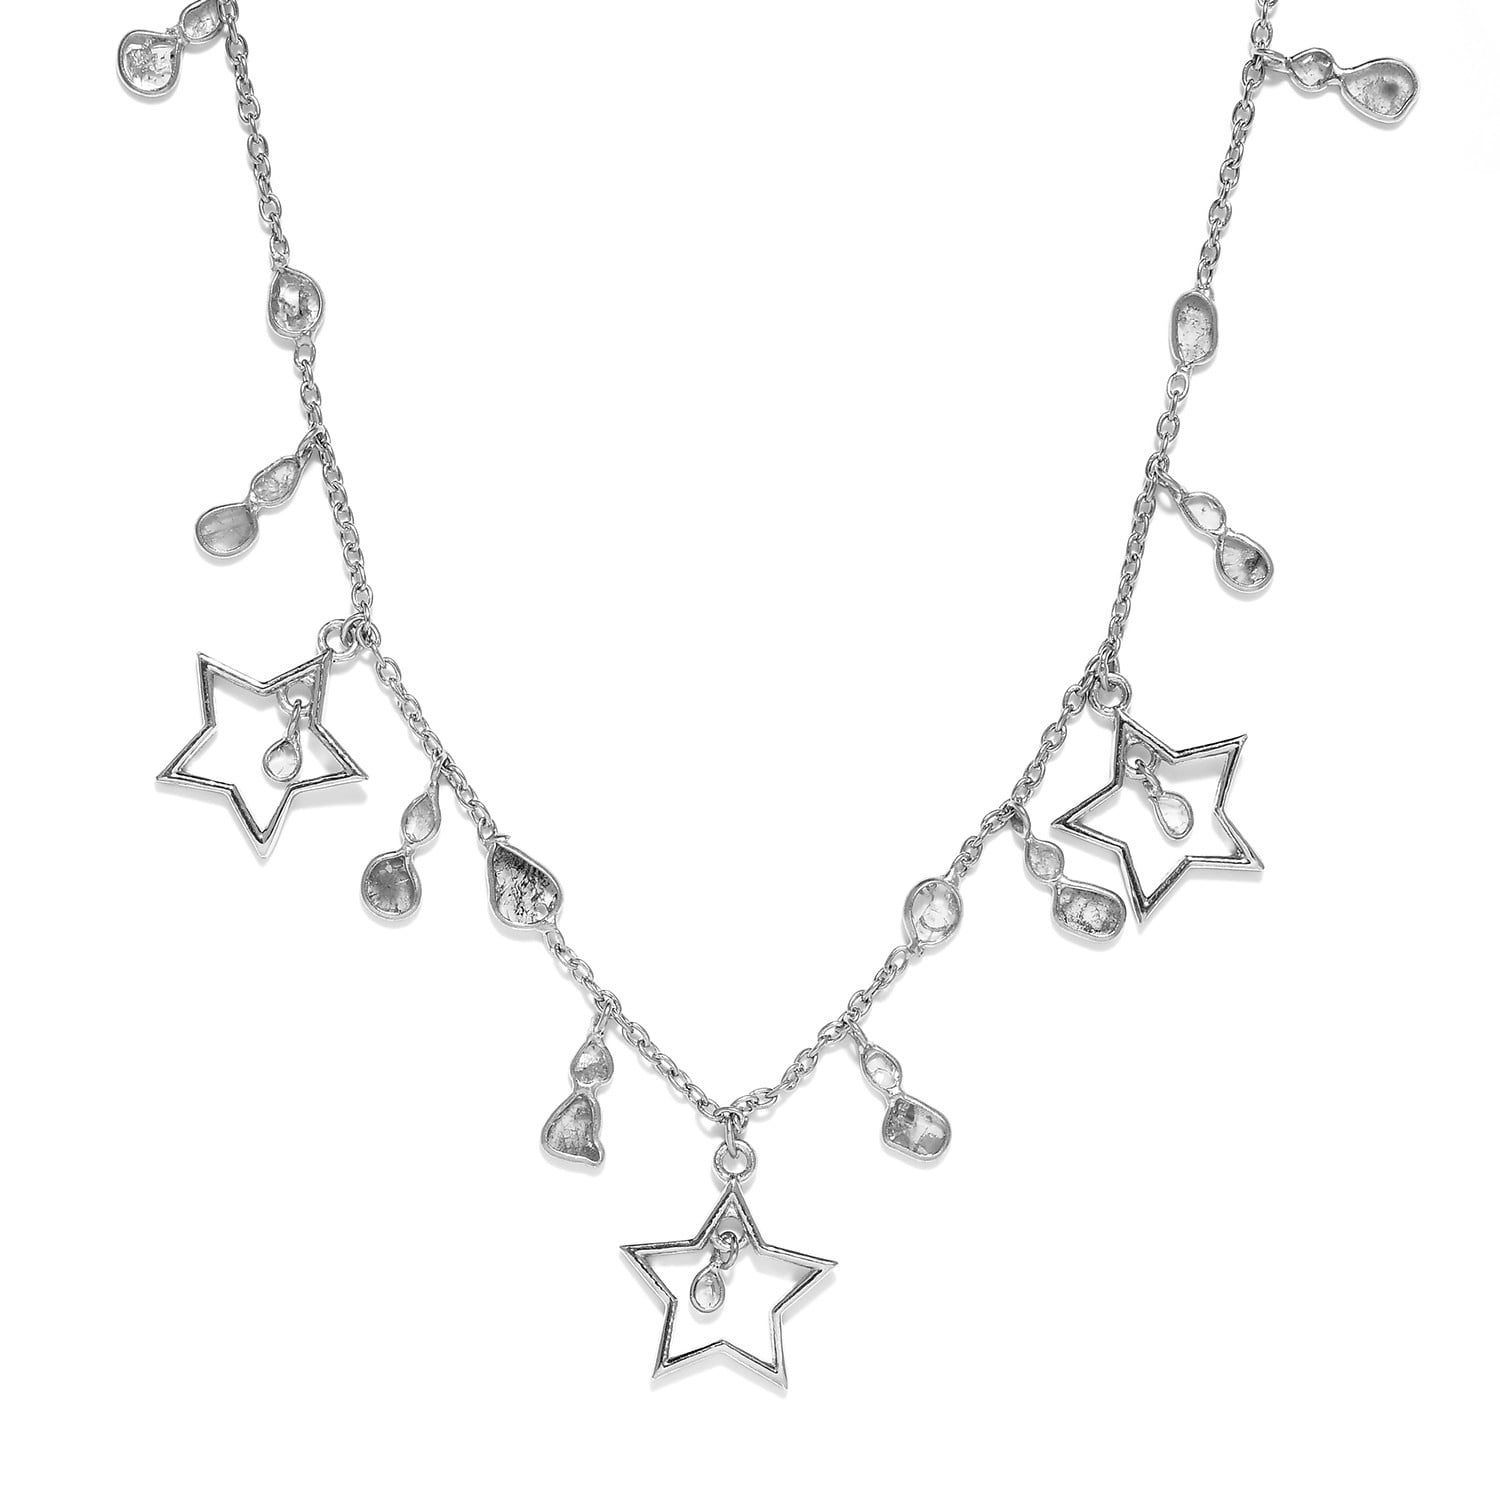 Bridal Jewellery 925 Sterling Silver Plain Earrings For Women's Best Friends Gift Star